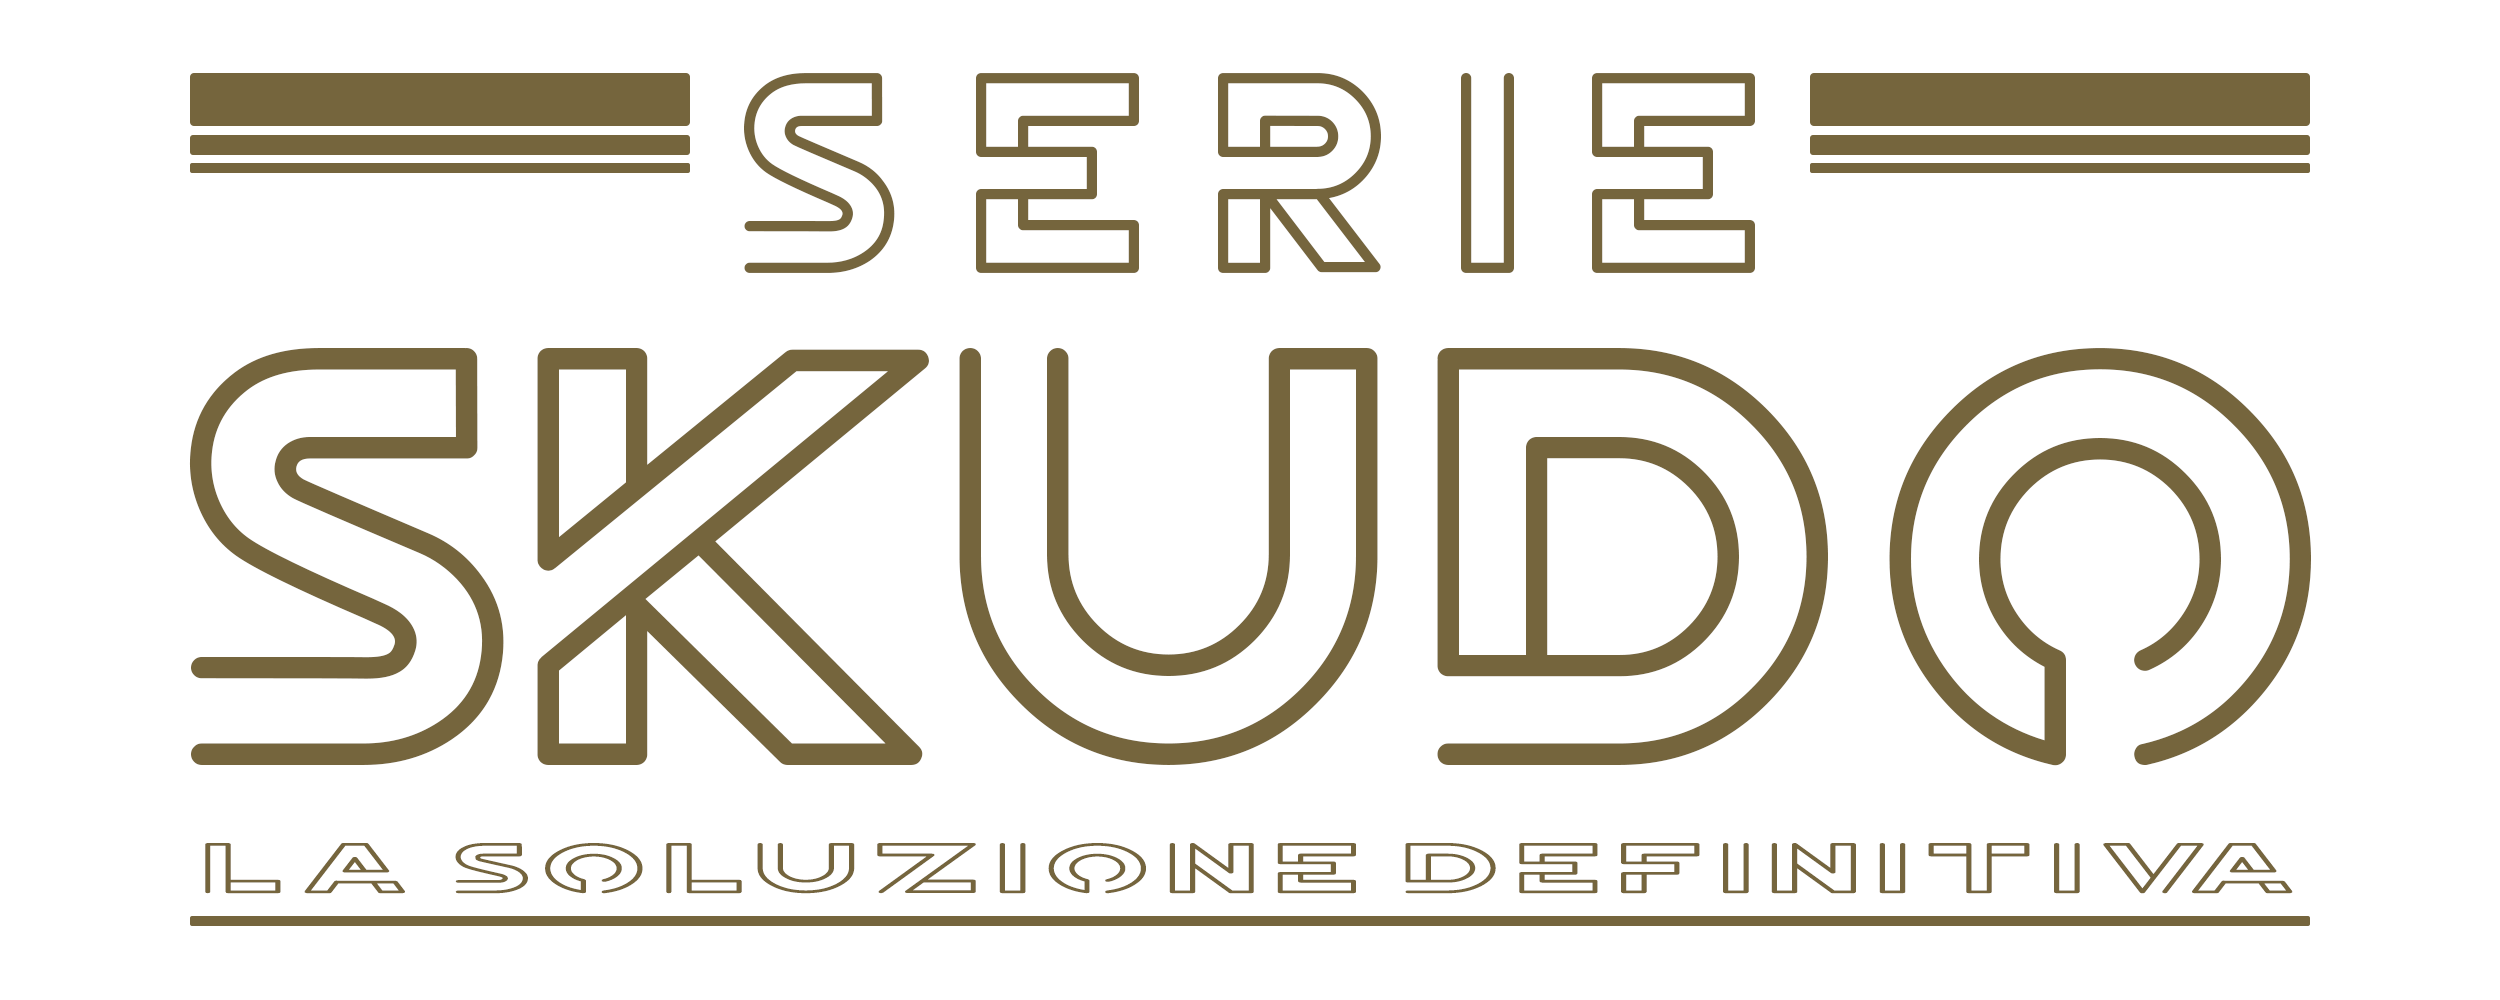 Logo SKUDO.jpg